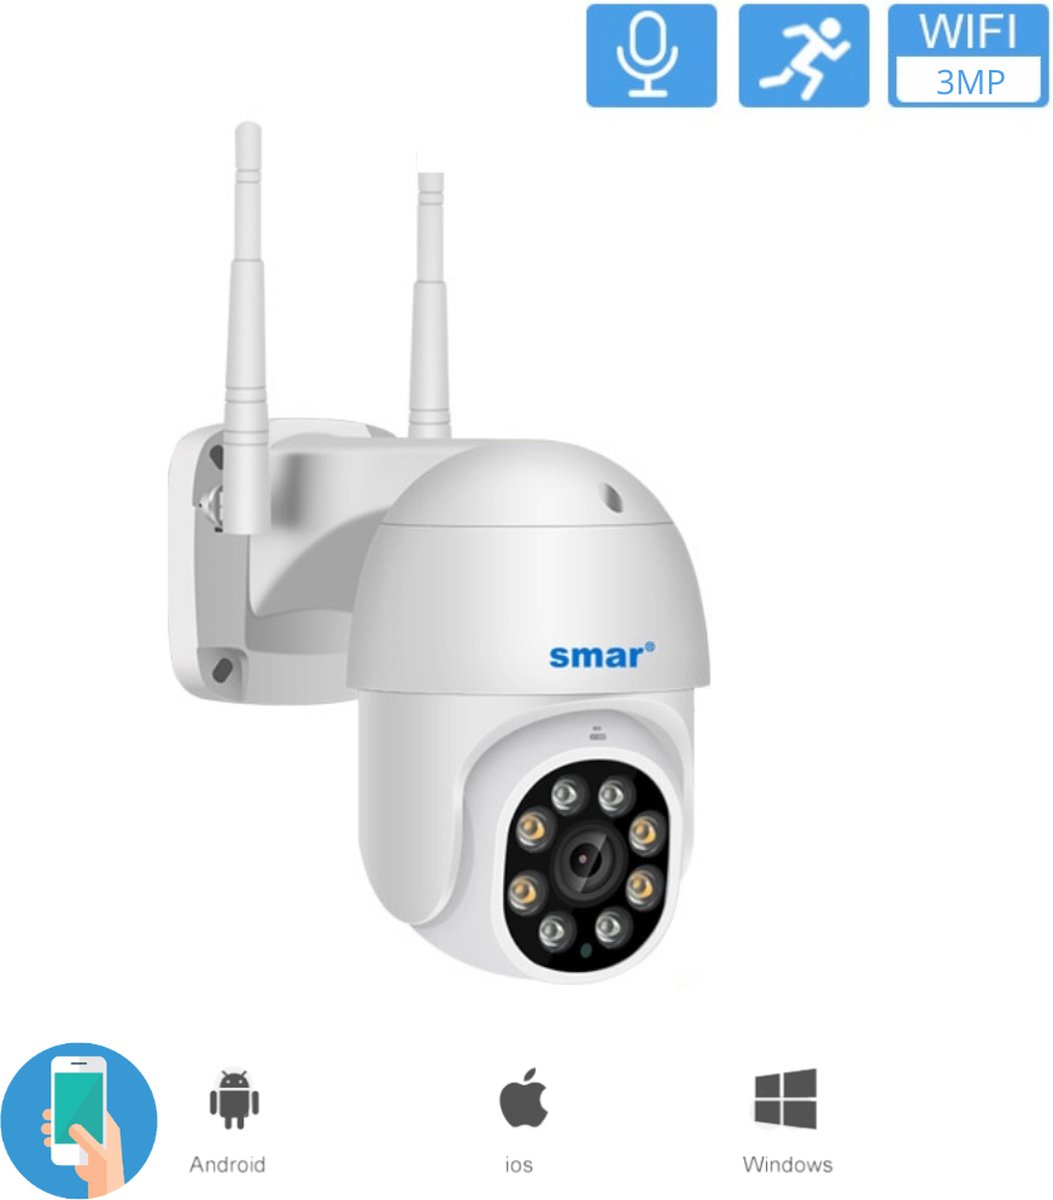 Buitencamera - Buiten Camera Met Nachtzicht 4x Zoom - Buitencamera draadloos wifi 2MP - Met App - Menselijke Detectie - IP66 - Infrarood